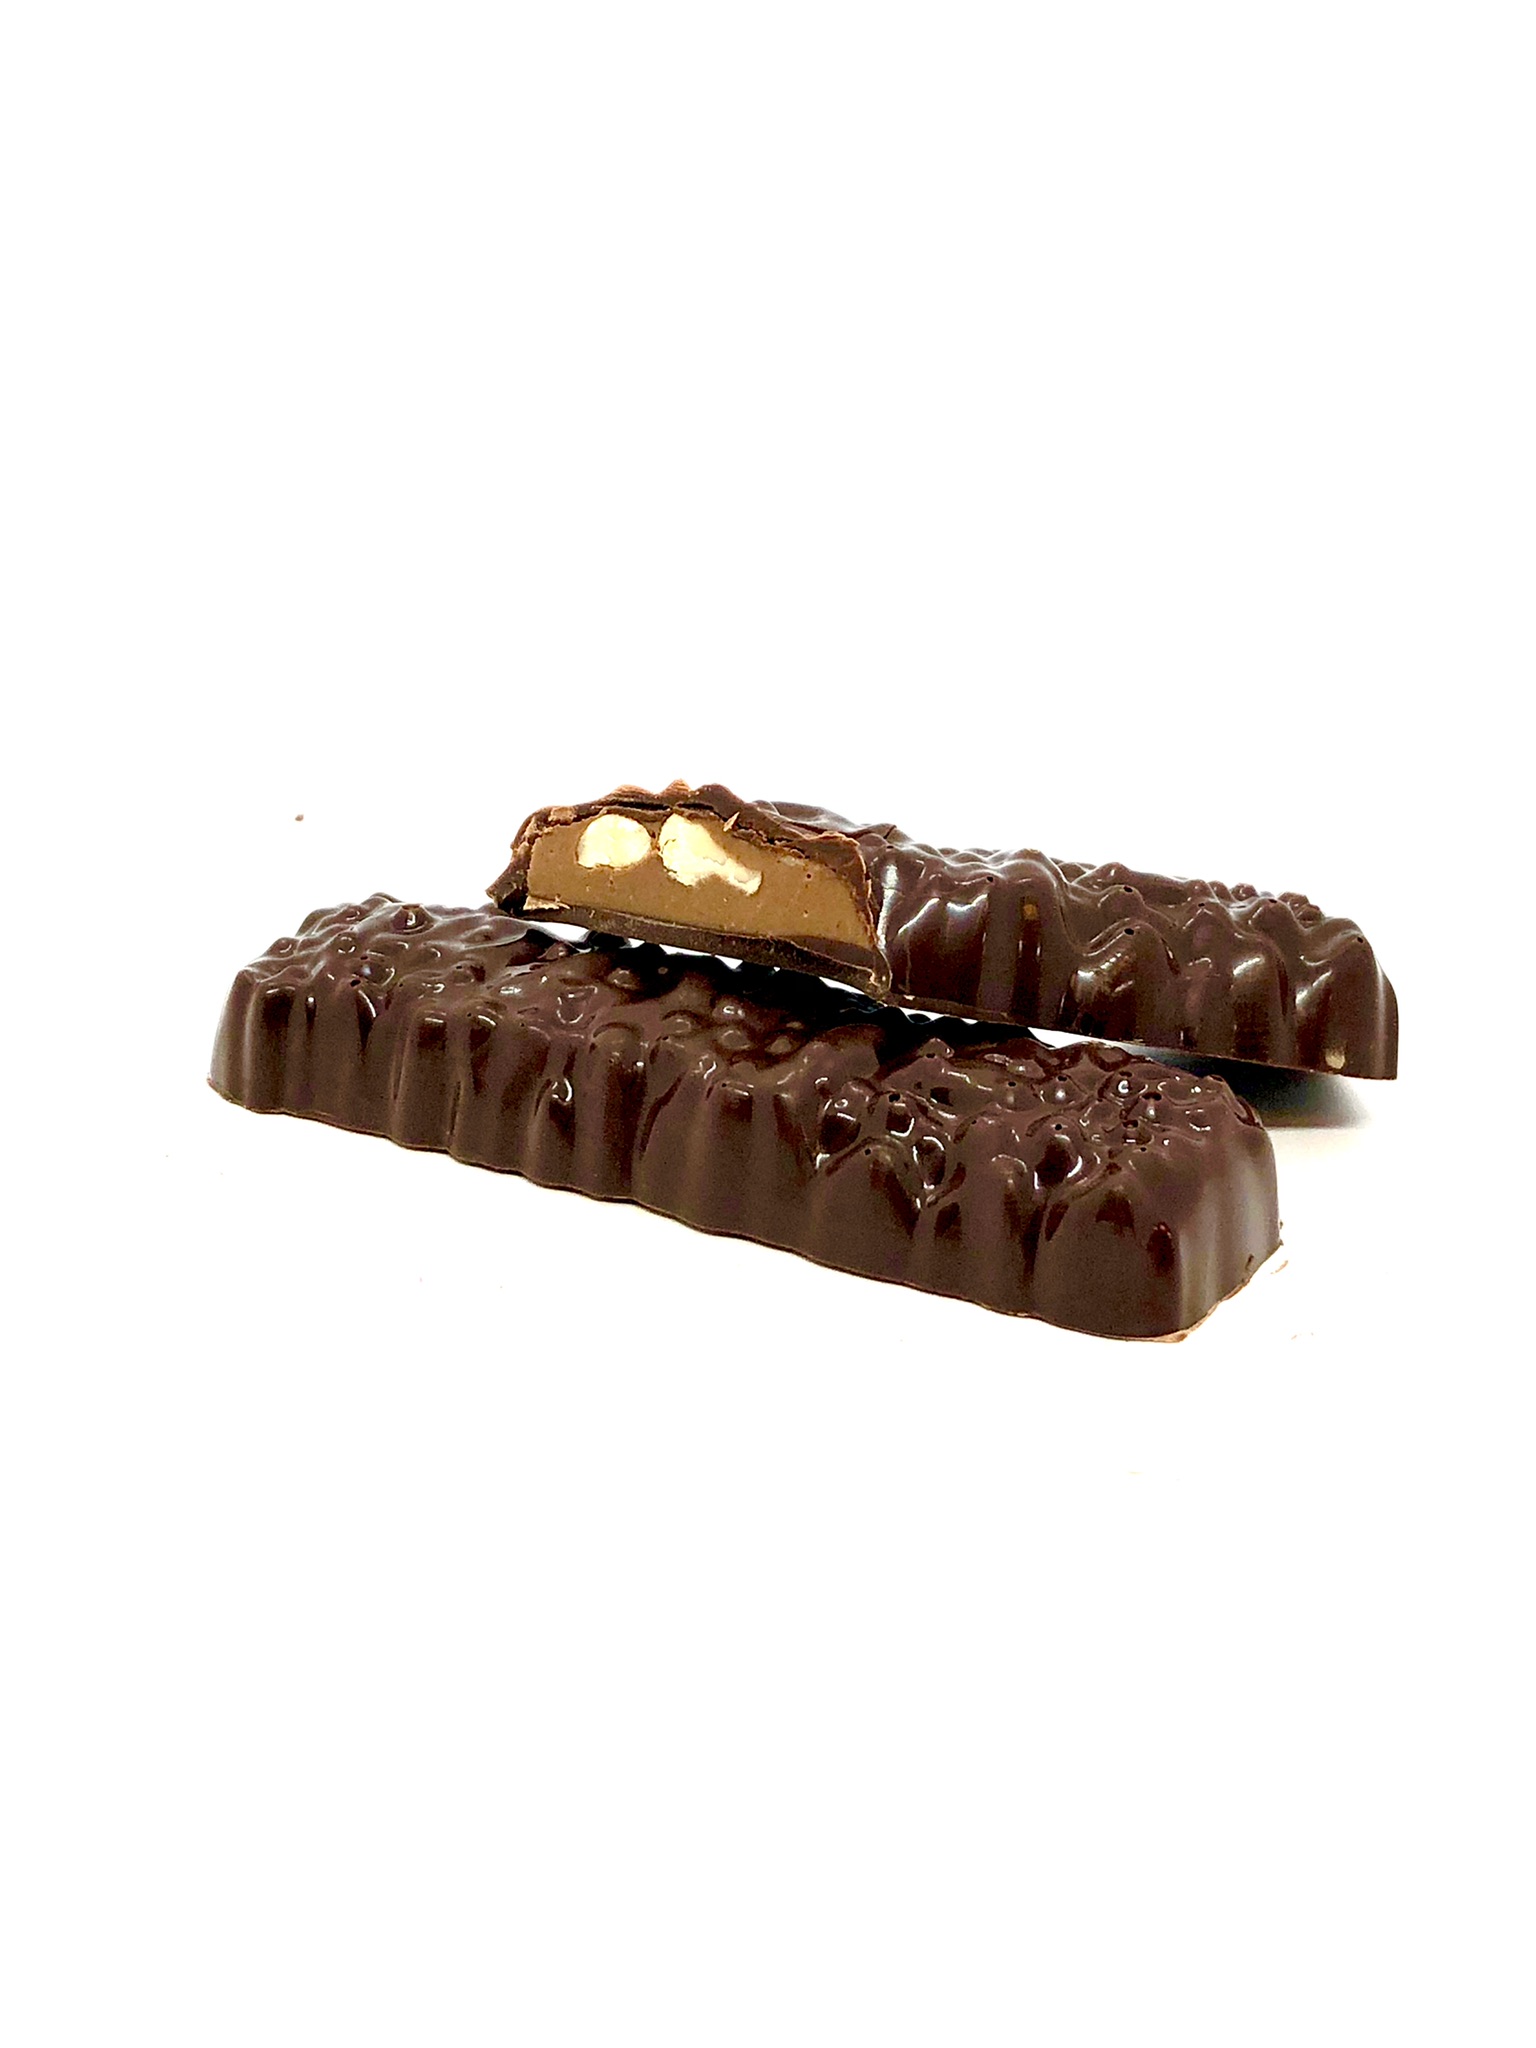 Chokladbar – Hasselnöt & Mjölkchoklad